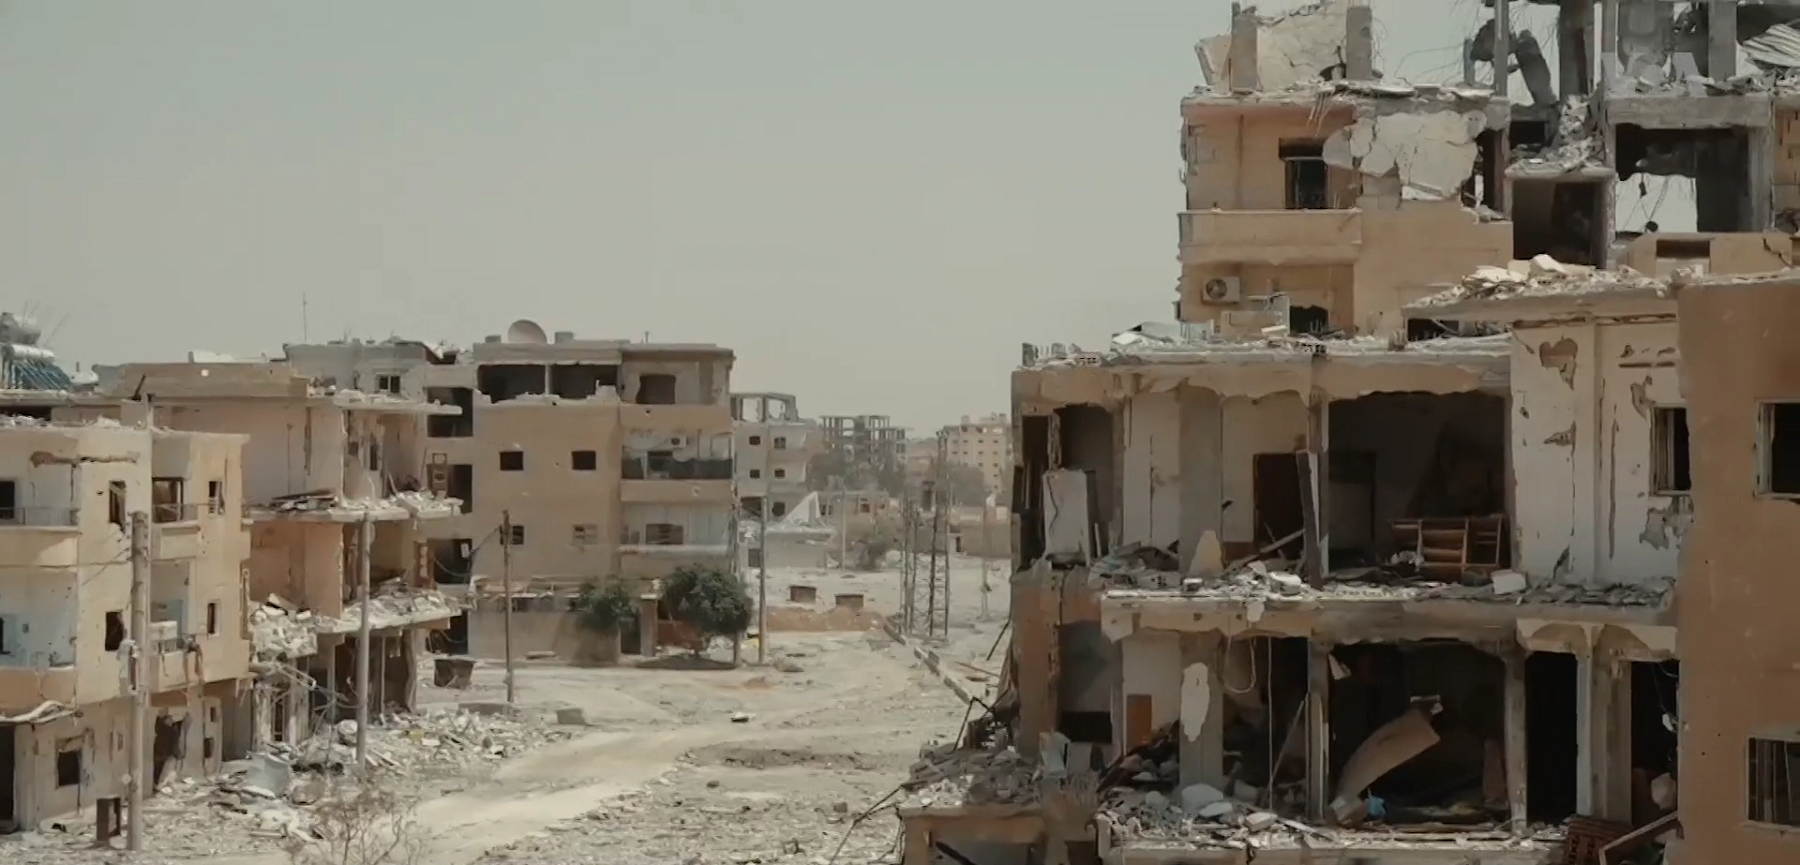 Totalødelagt område i byen Raqqa. Bare skallet av bygningene står igjen.